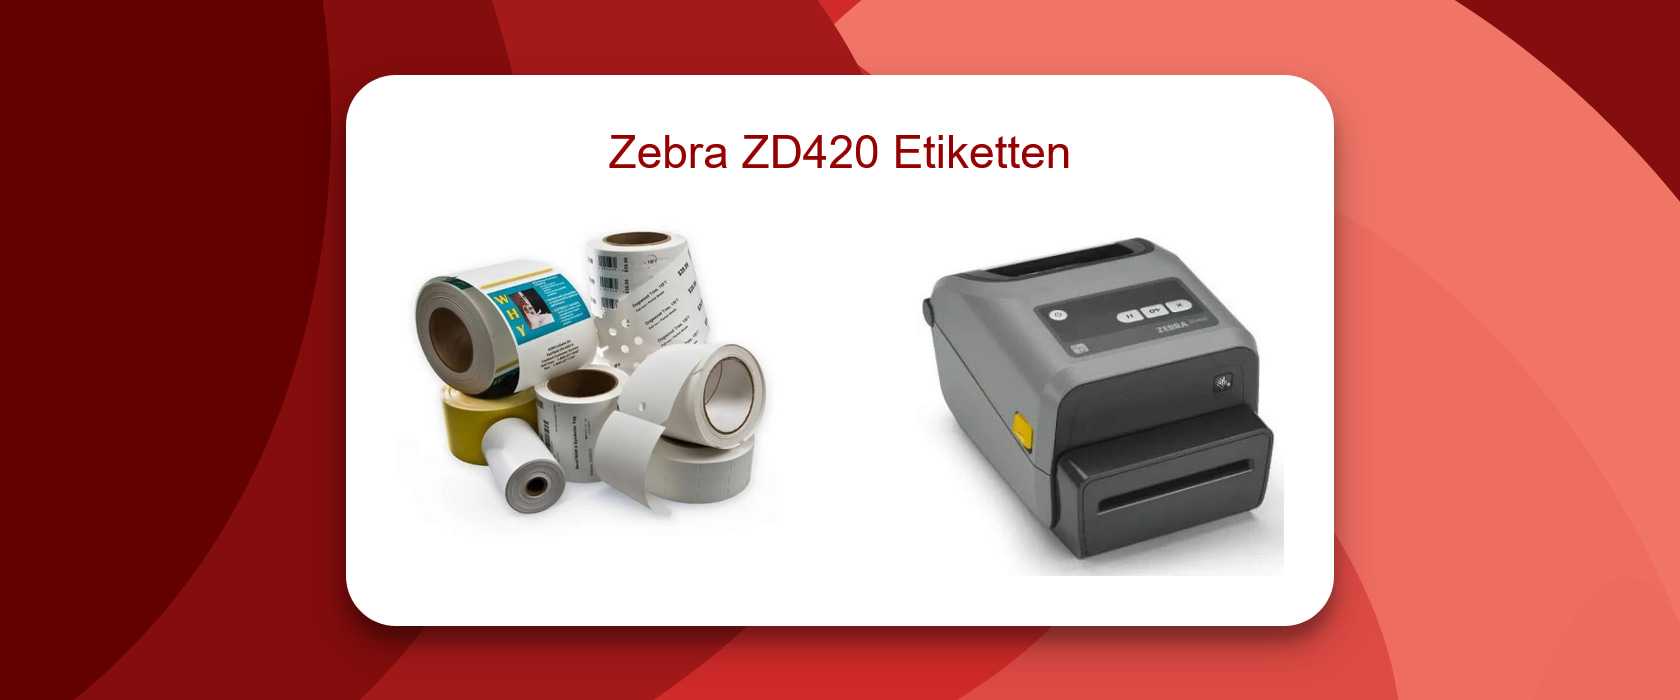 Der Zebra ZD420 Etiketten